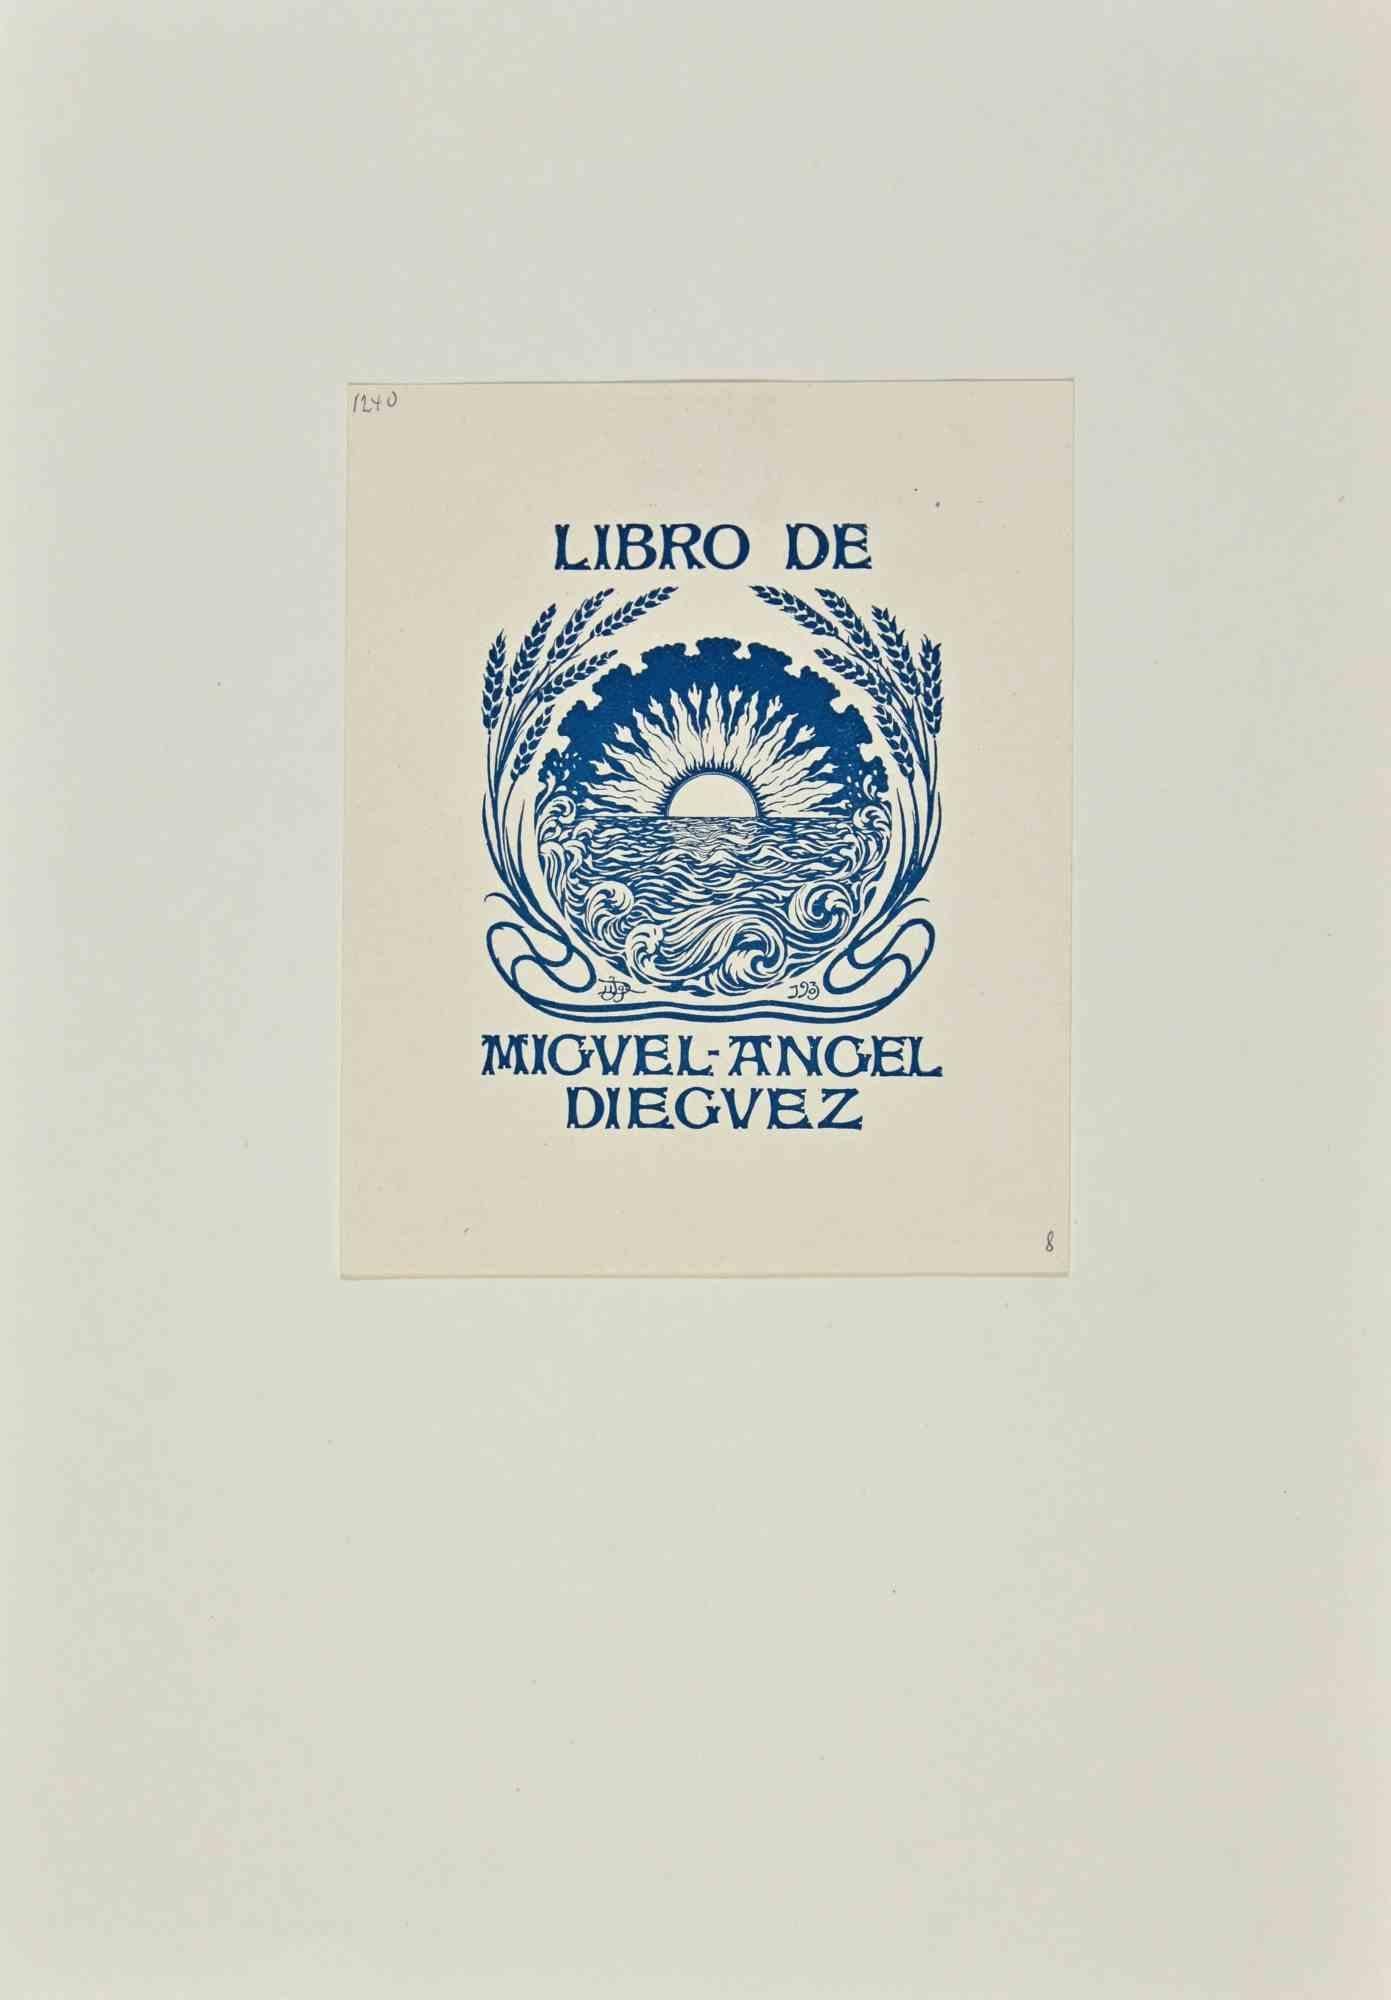 Libro de Miguel Angel Dieguez ist ein modernes Kunstwerk des spanischen Künstlers Joaquín Diéguez y Díaz aus dem Jahr 1903.
 
Kolorierter Holzschnitt auf Papier. Handsigniert auf der Rückseite
 
Das Werk ist auf Karton geklebt.
 
Gesamtabmessungen: